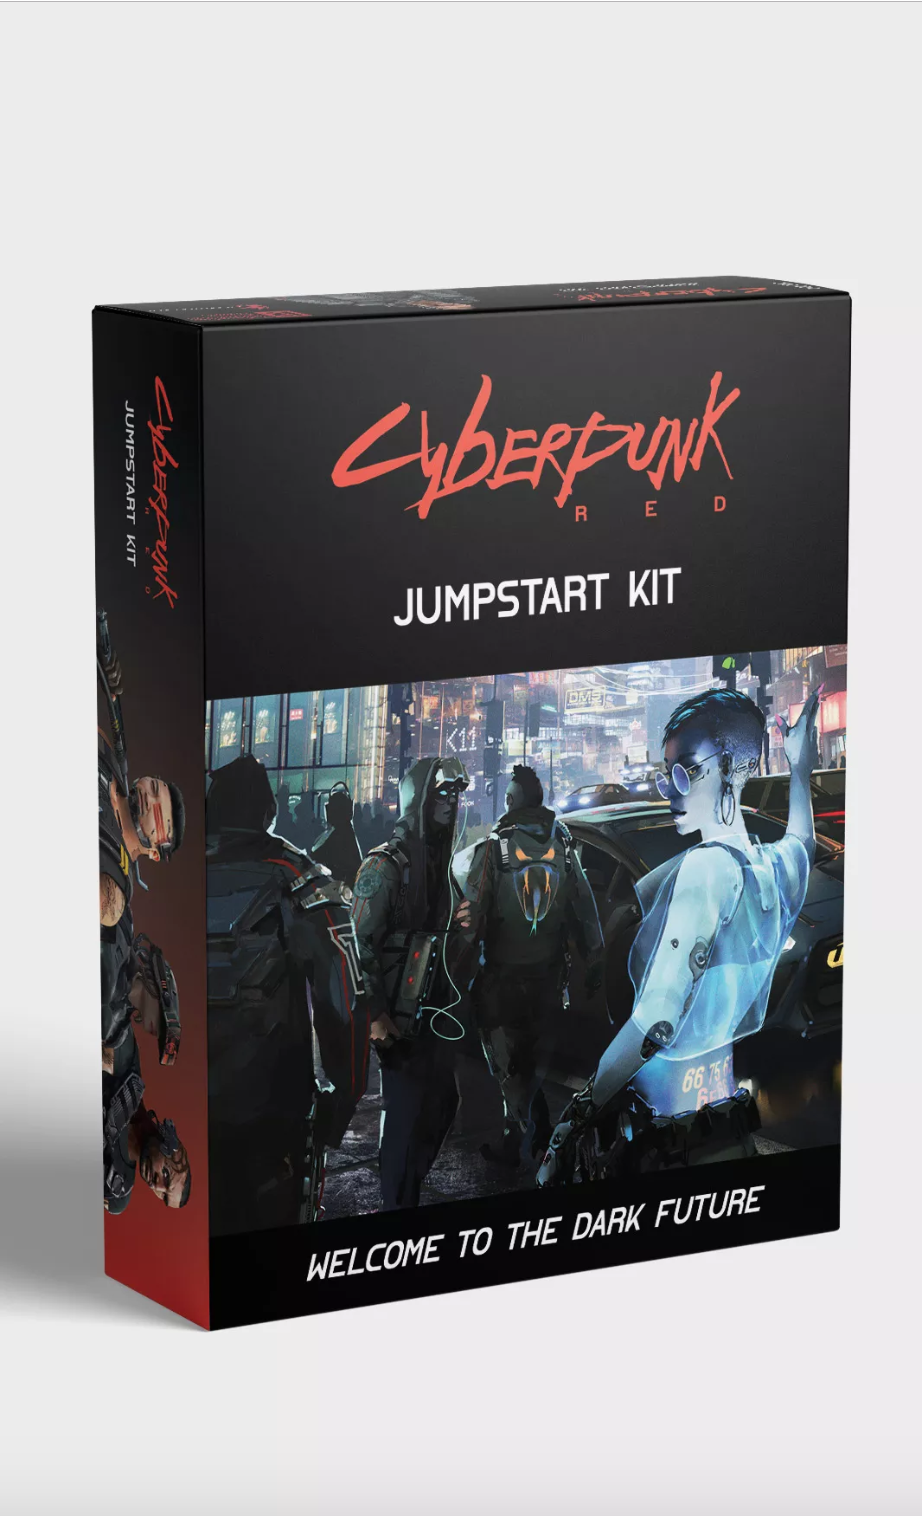 Cyberpunk Red será o RPG de mesa que será prequel do jogo Cyberpunk 2077